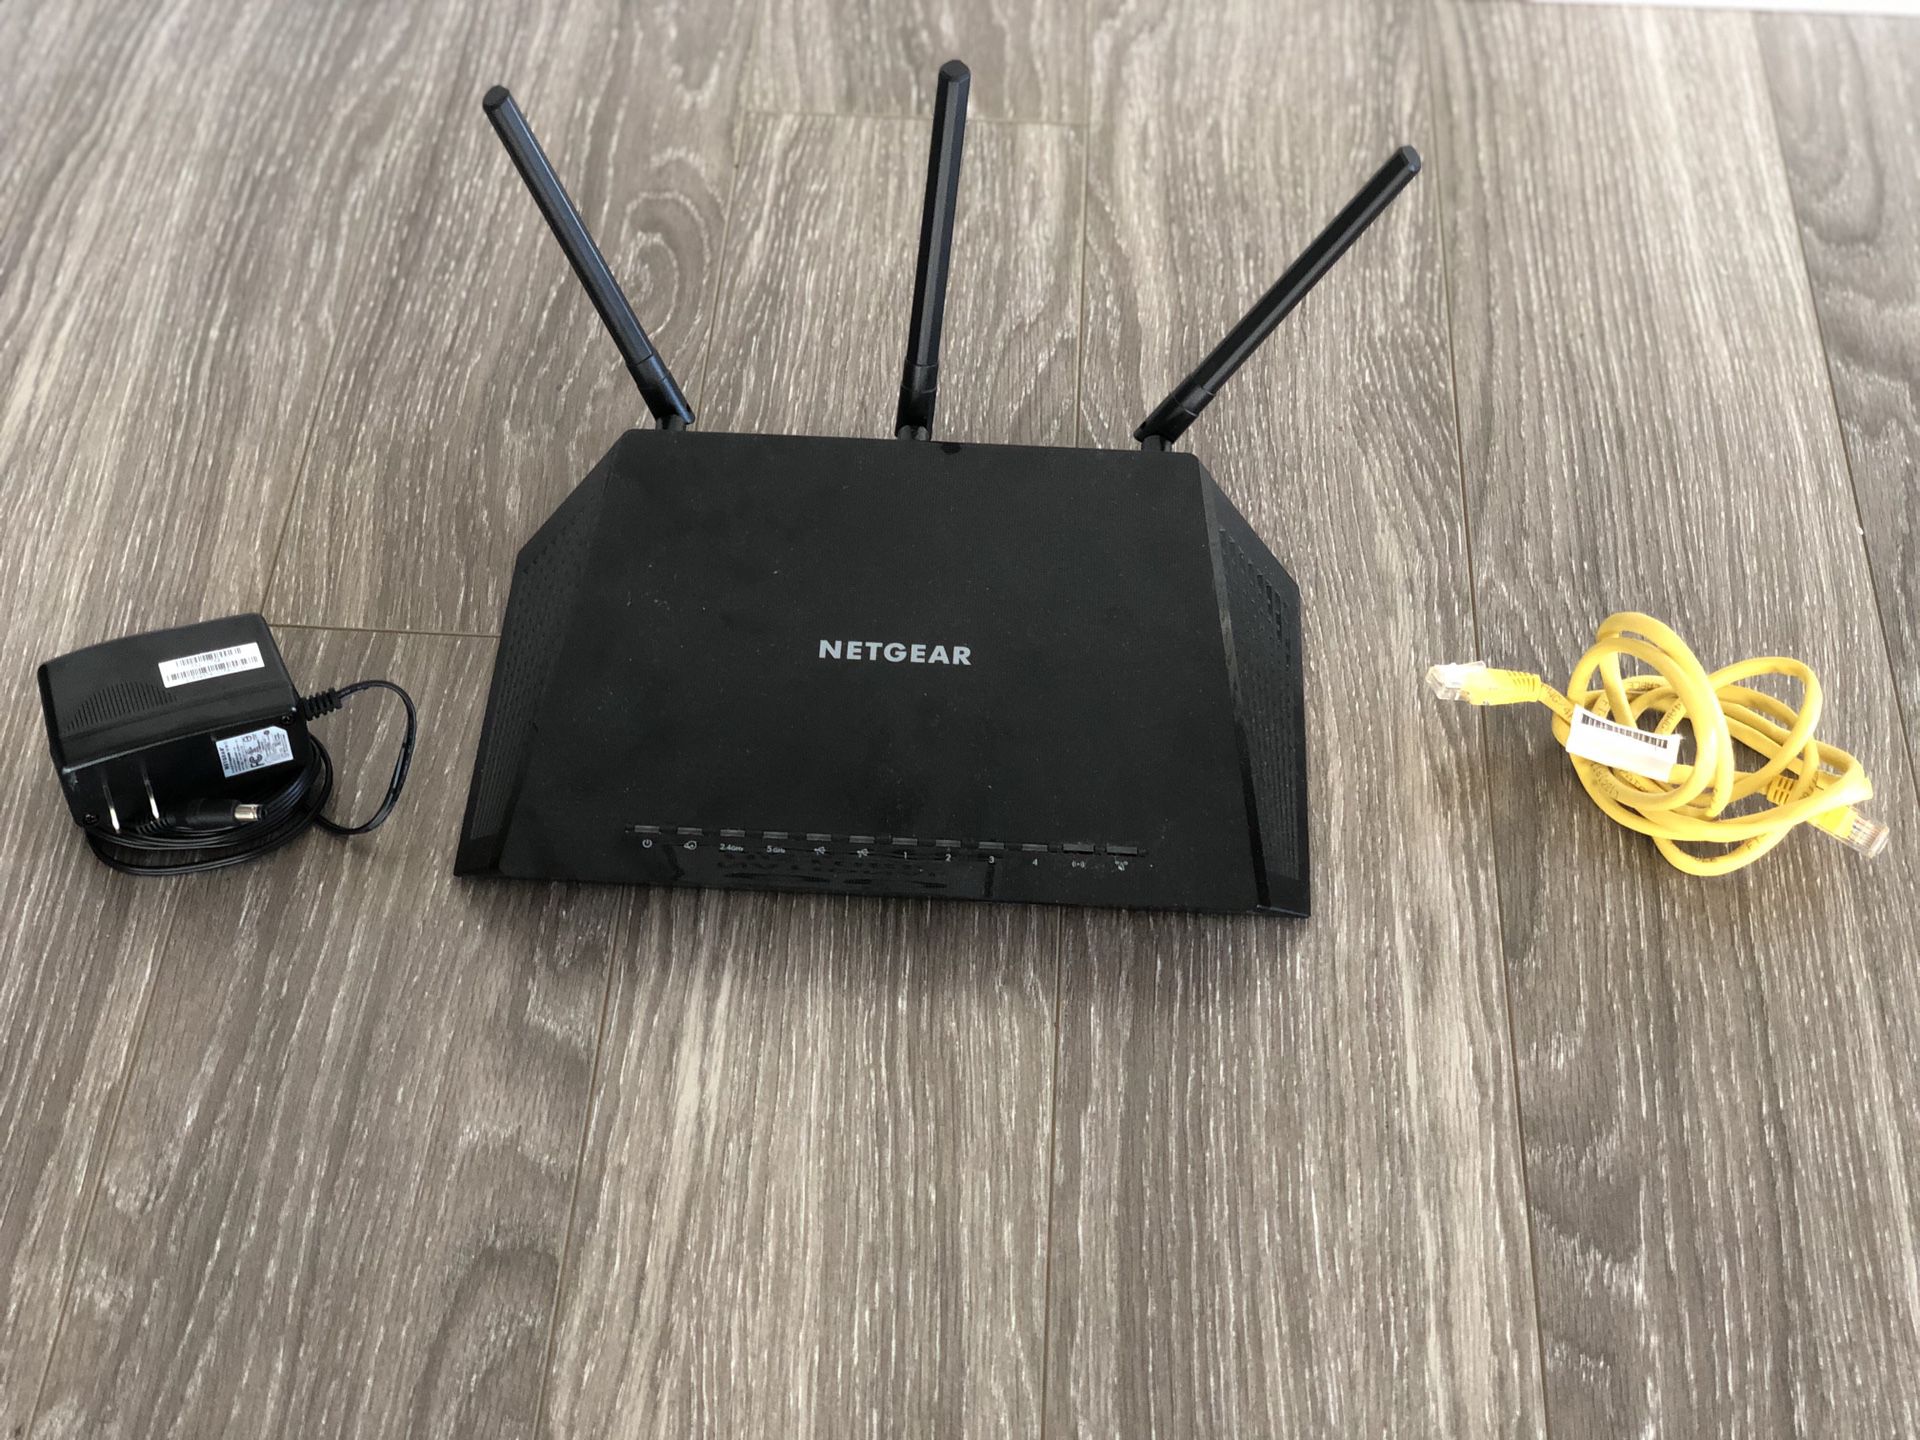 WiFi router / modem NetGear